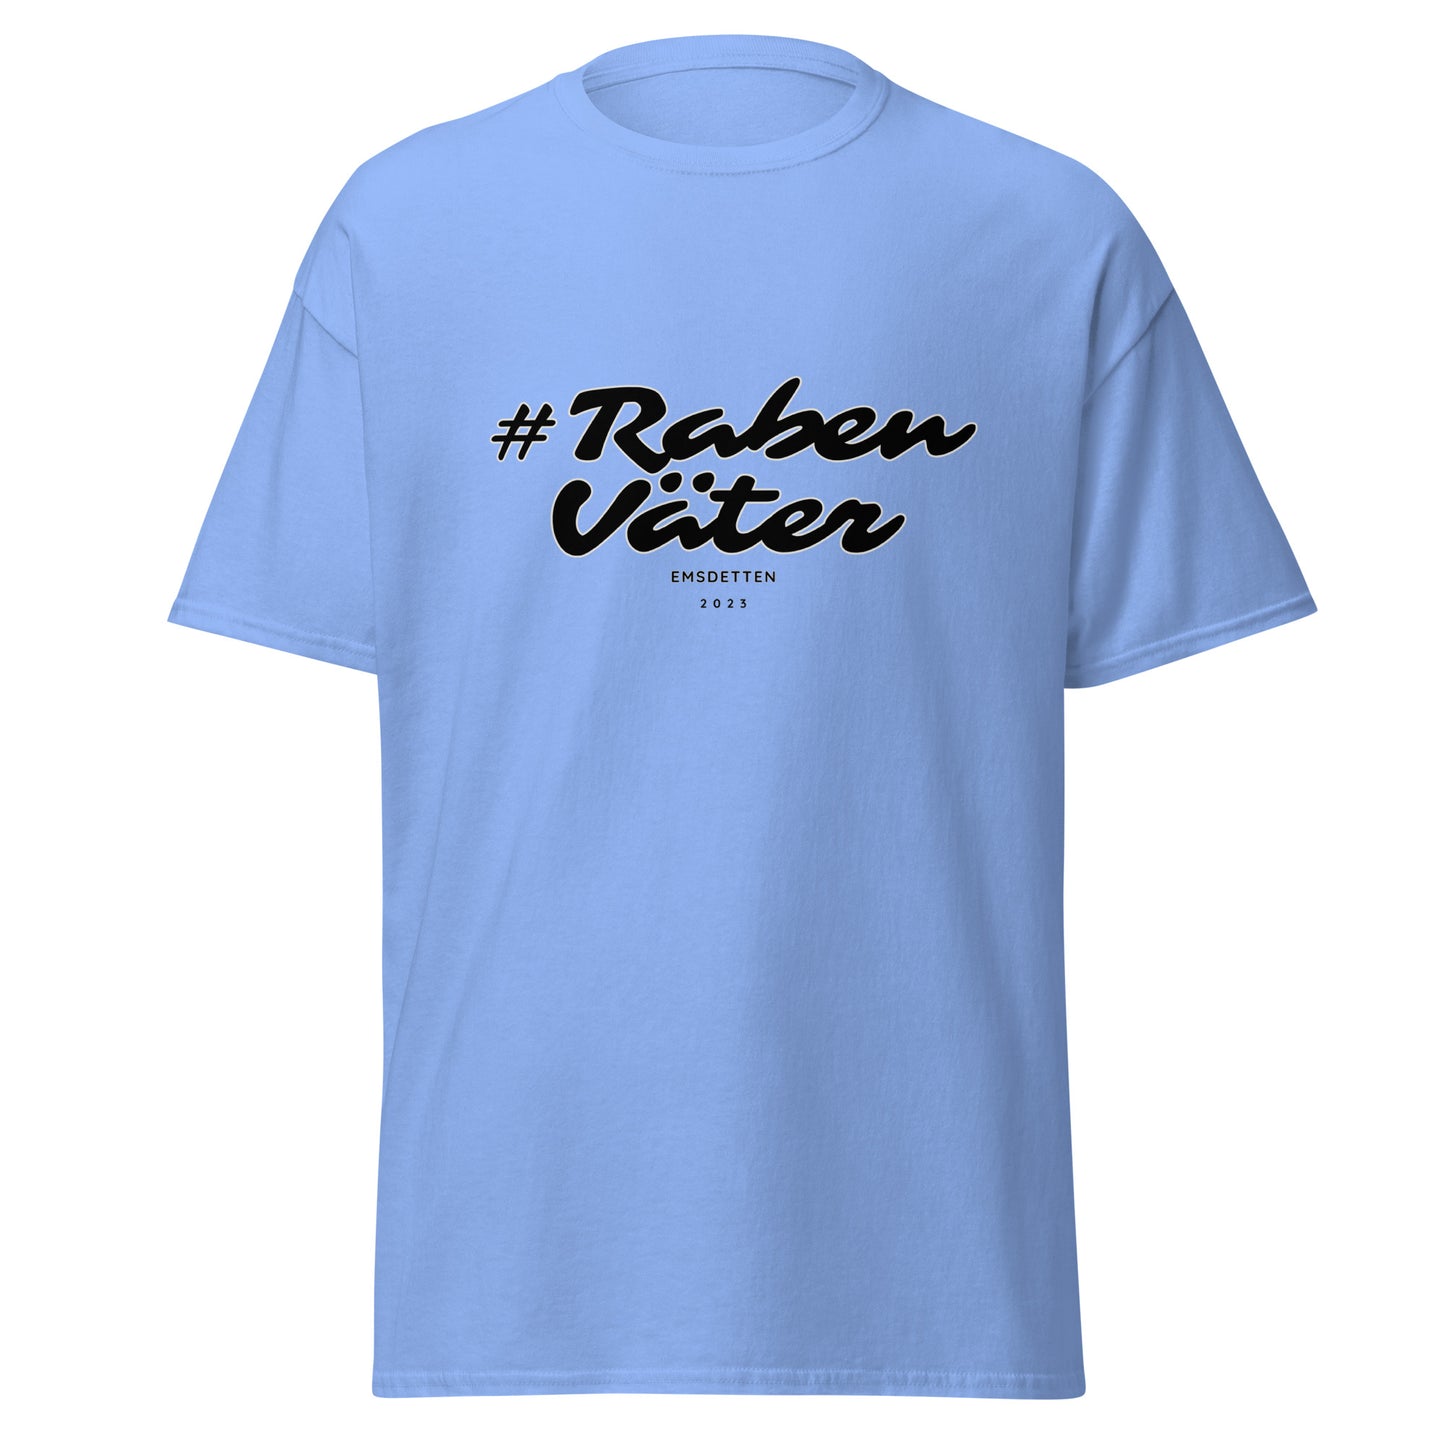 Classic Shirt #RabenVäter